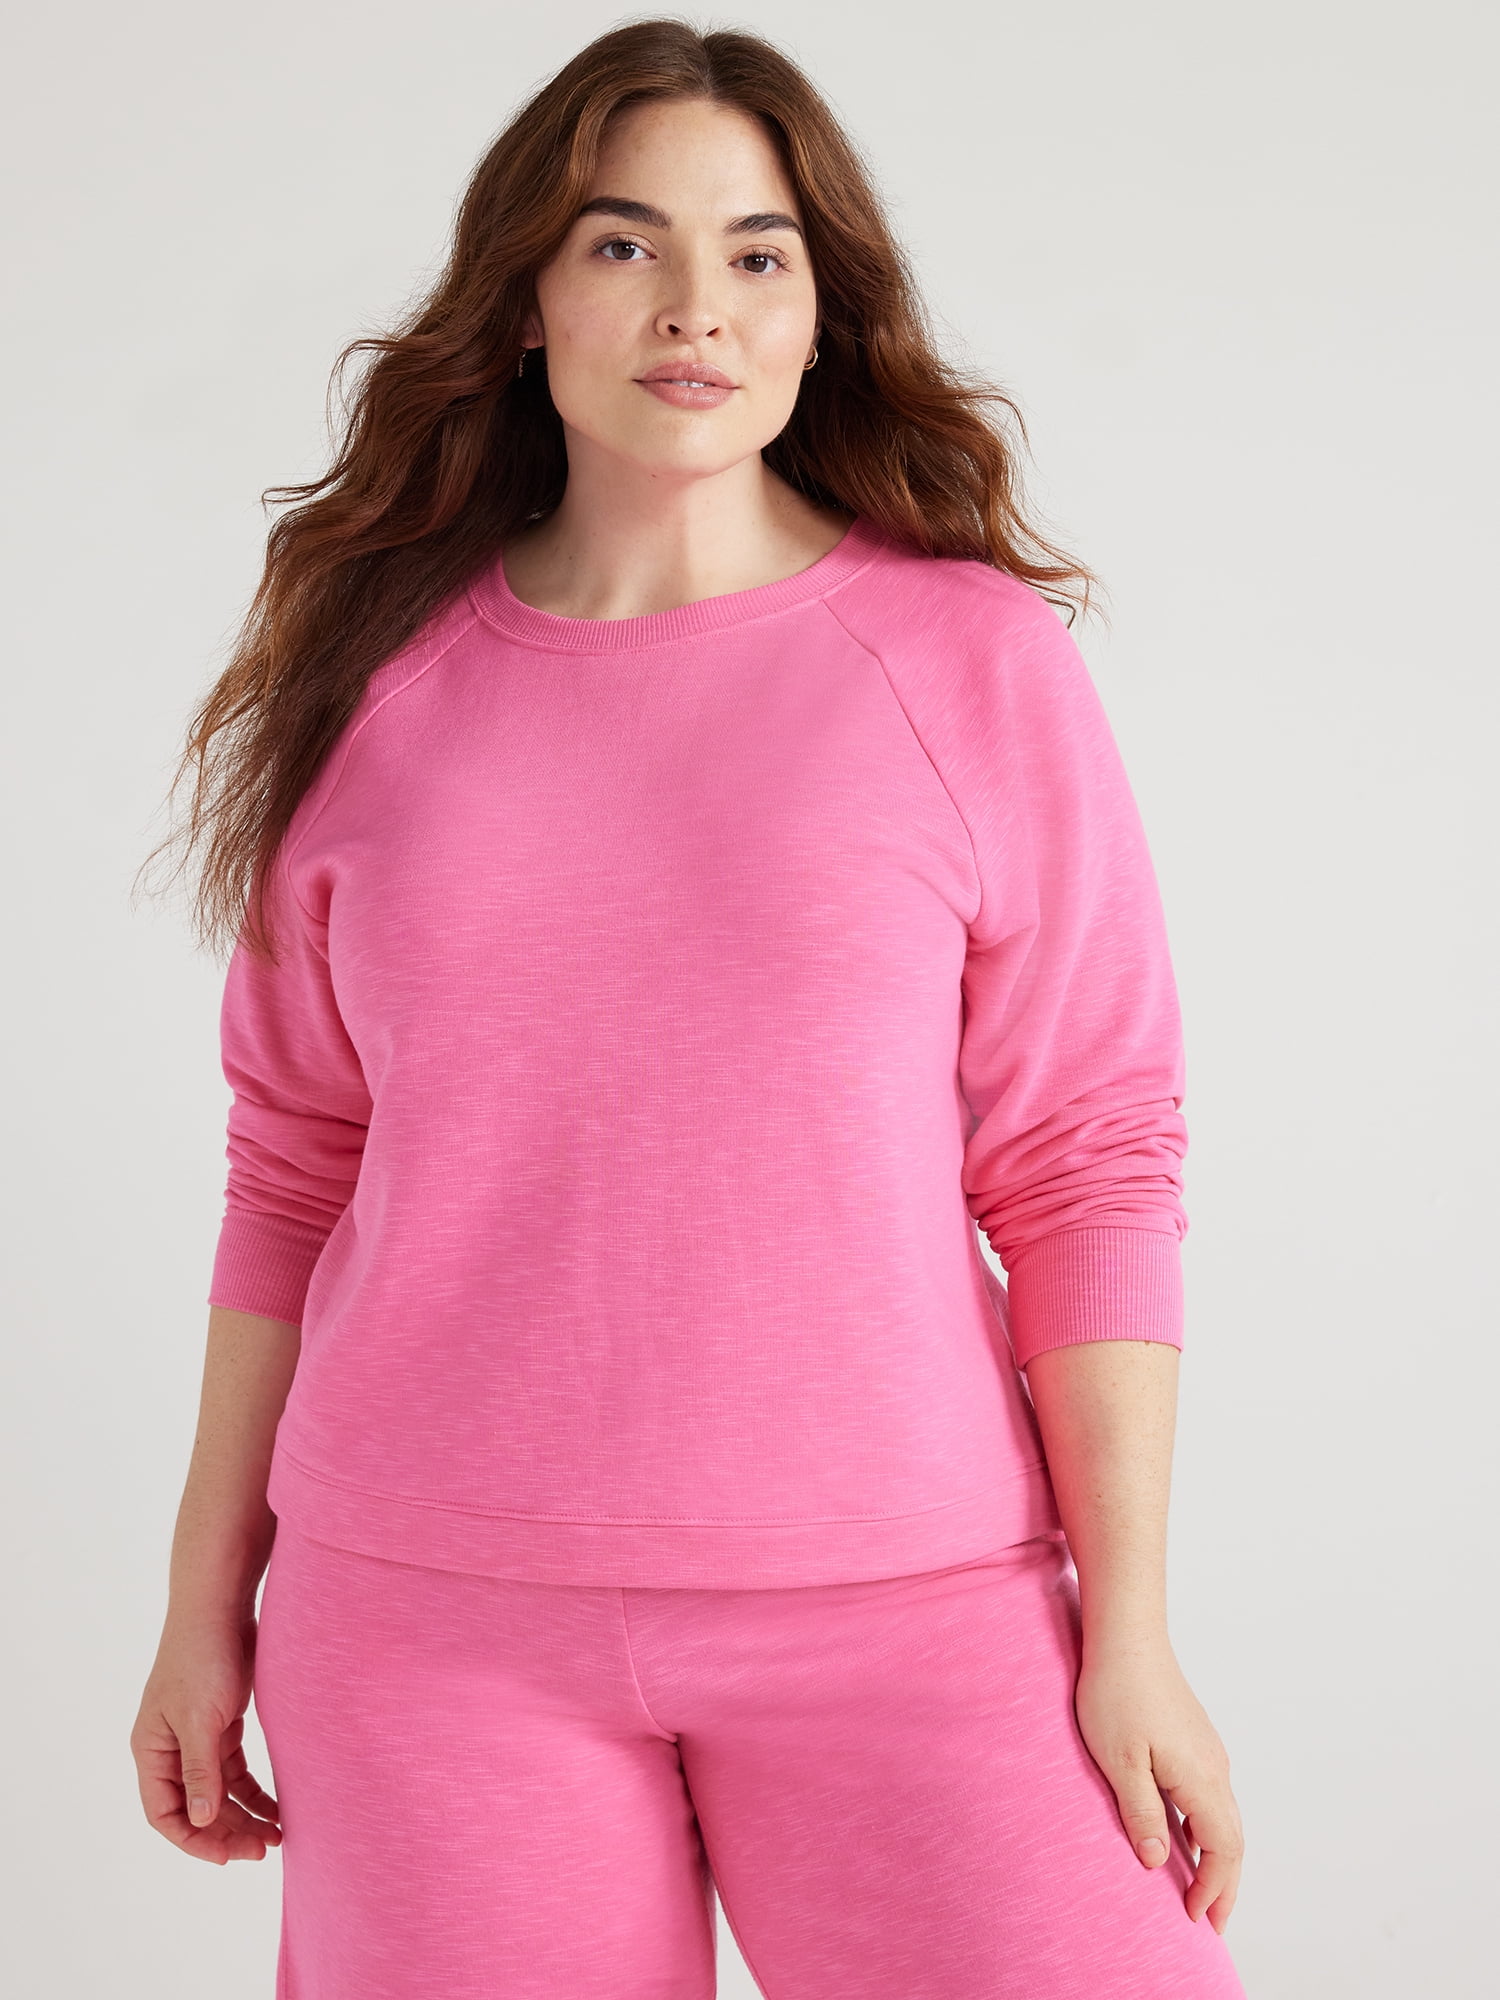 Joyspun Women's Fleece Sleep Top with Long Sleeves, Sizes XS to 3X ...